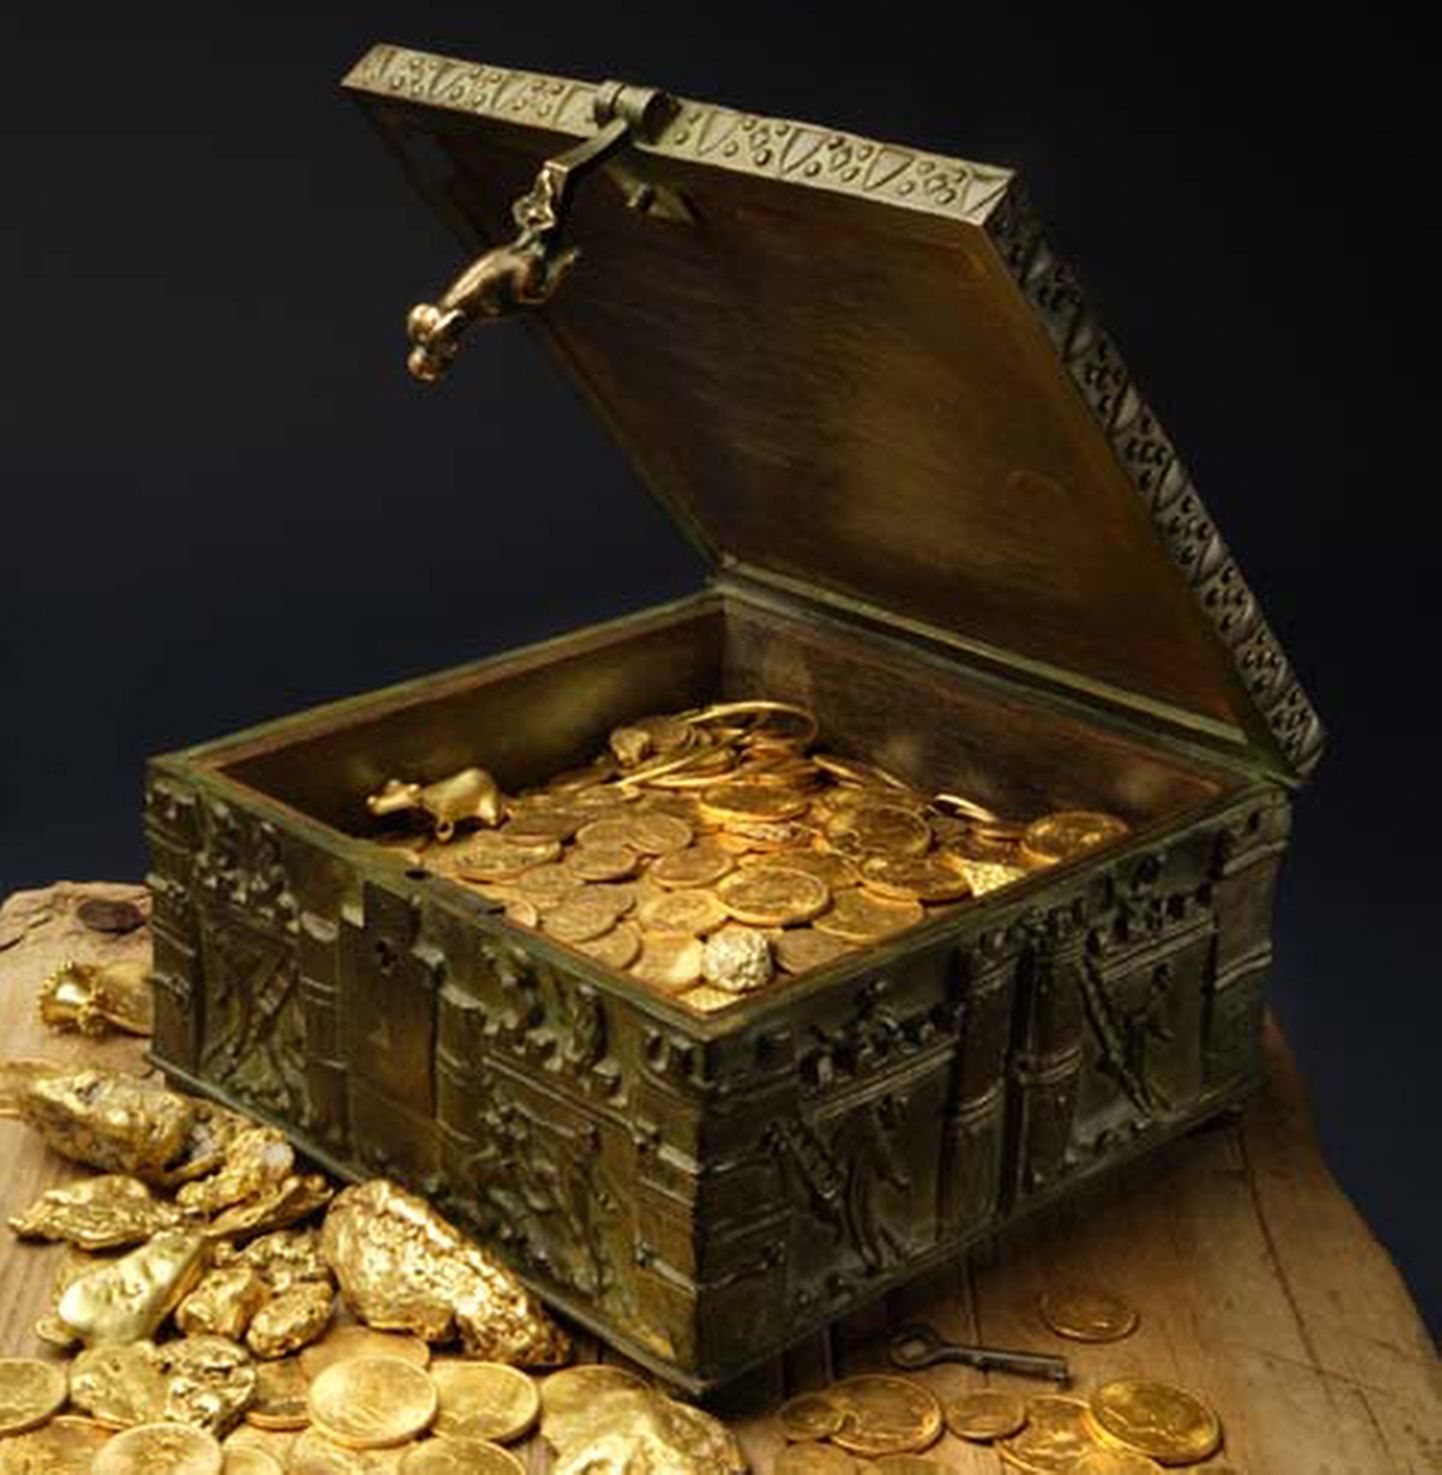 Forrest Fenni avaldatud foto aardekastist, kus on kulda, kalliskive ja muud hinnalist